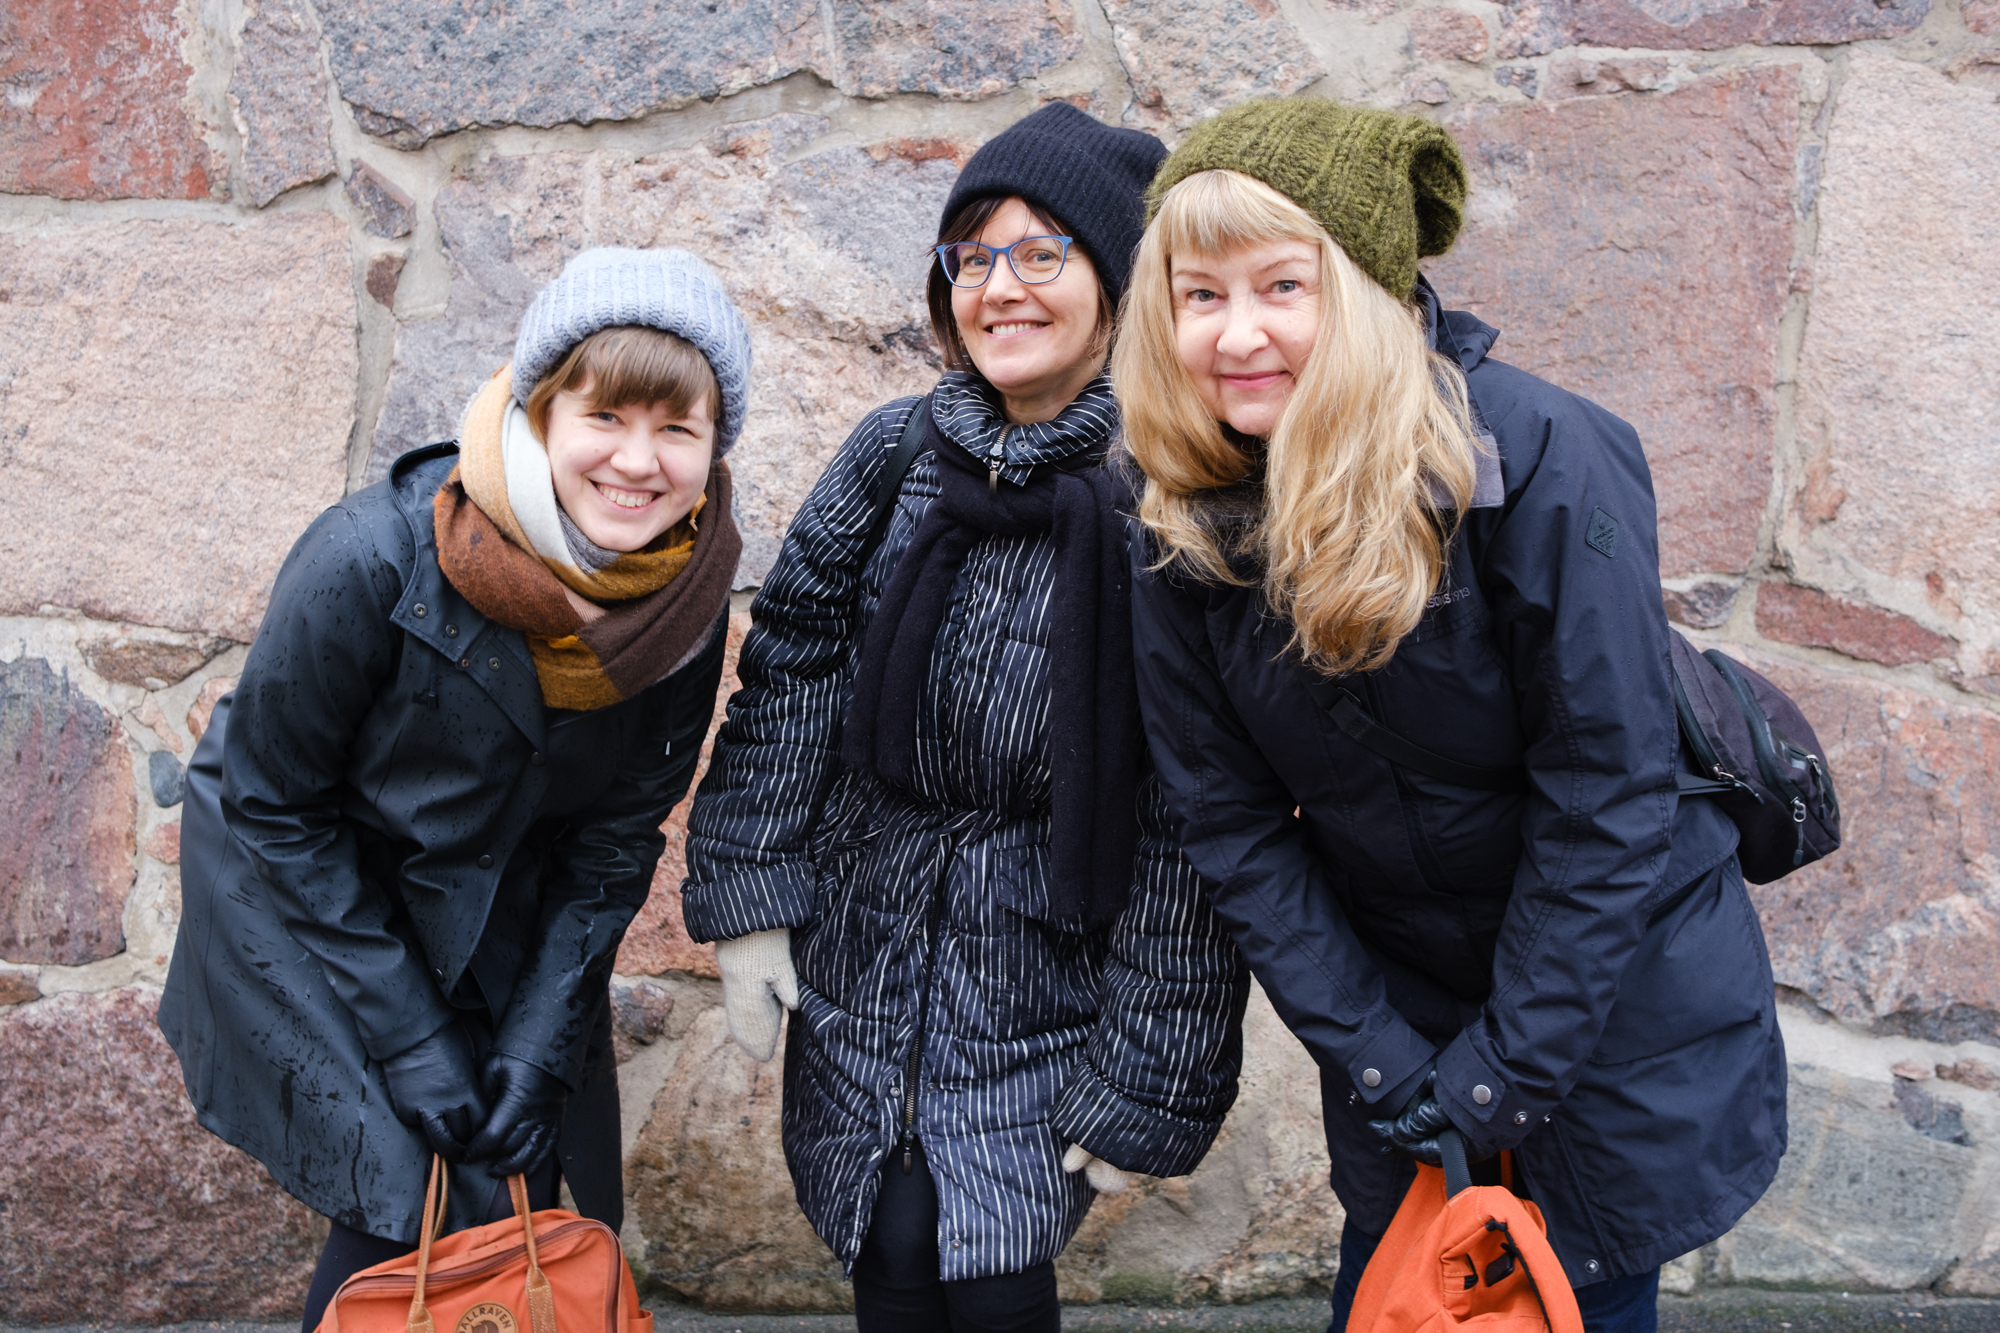 Kolme naista seisoo ulkona kivisen seinän edessä. Kaikki hymyilevät, kaikilla on pitkä takki ja pipo päässä. 